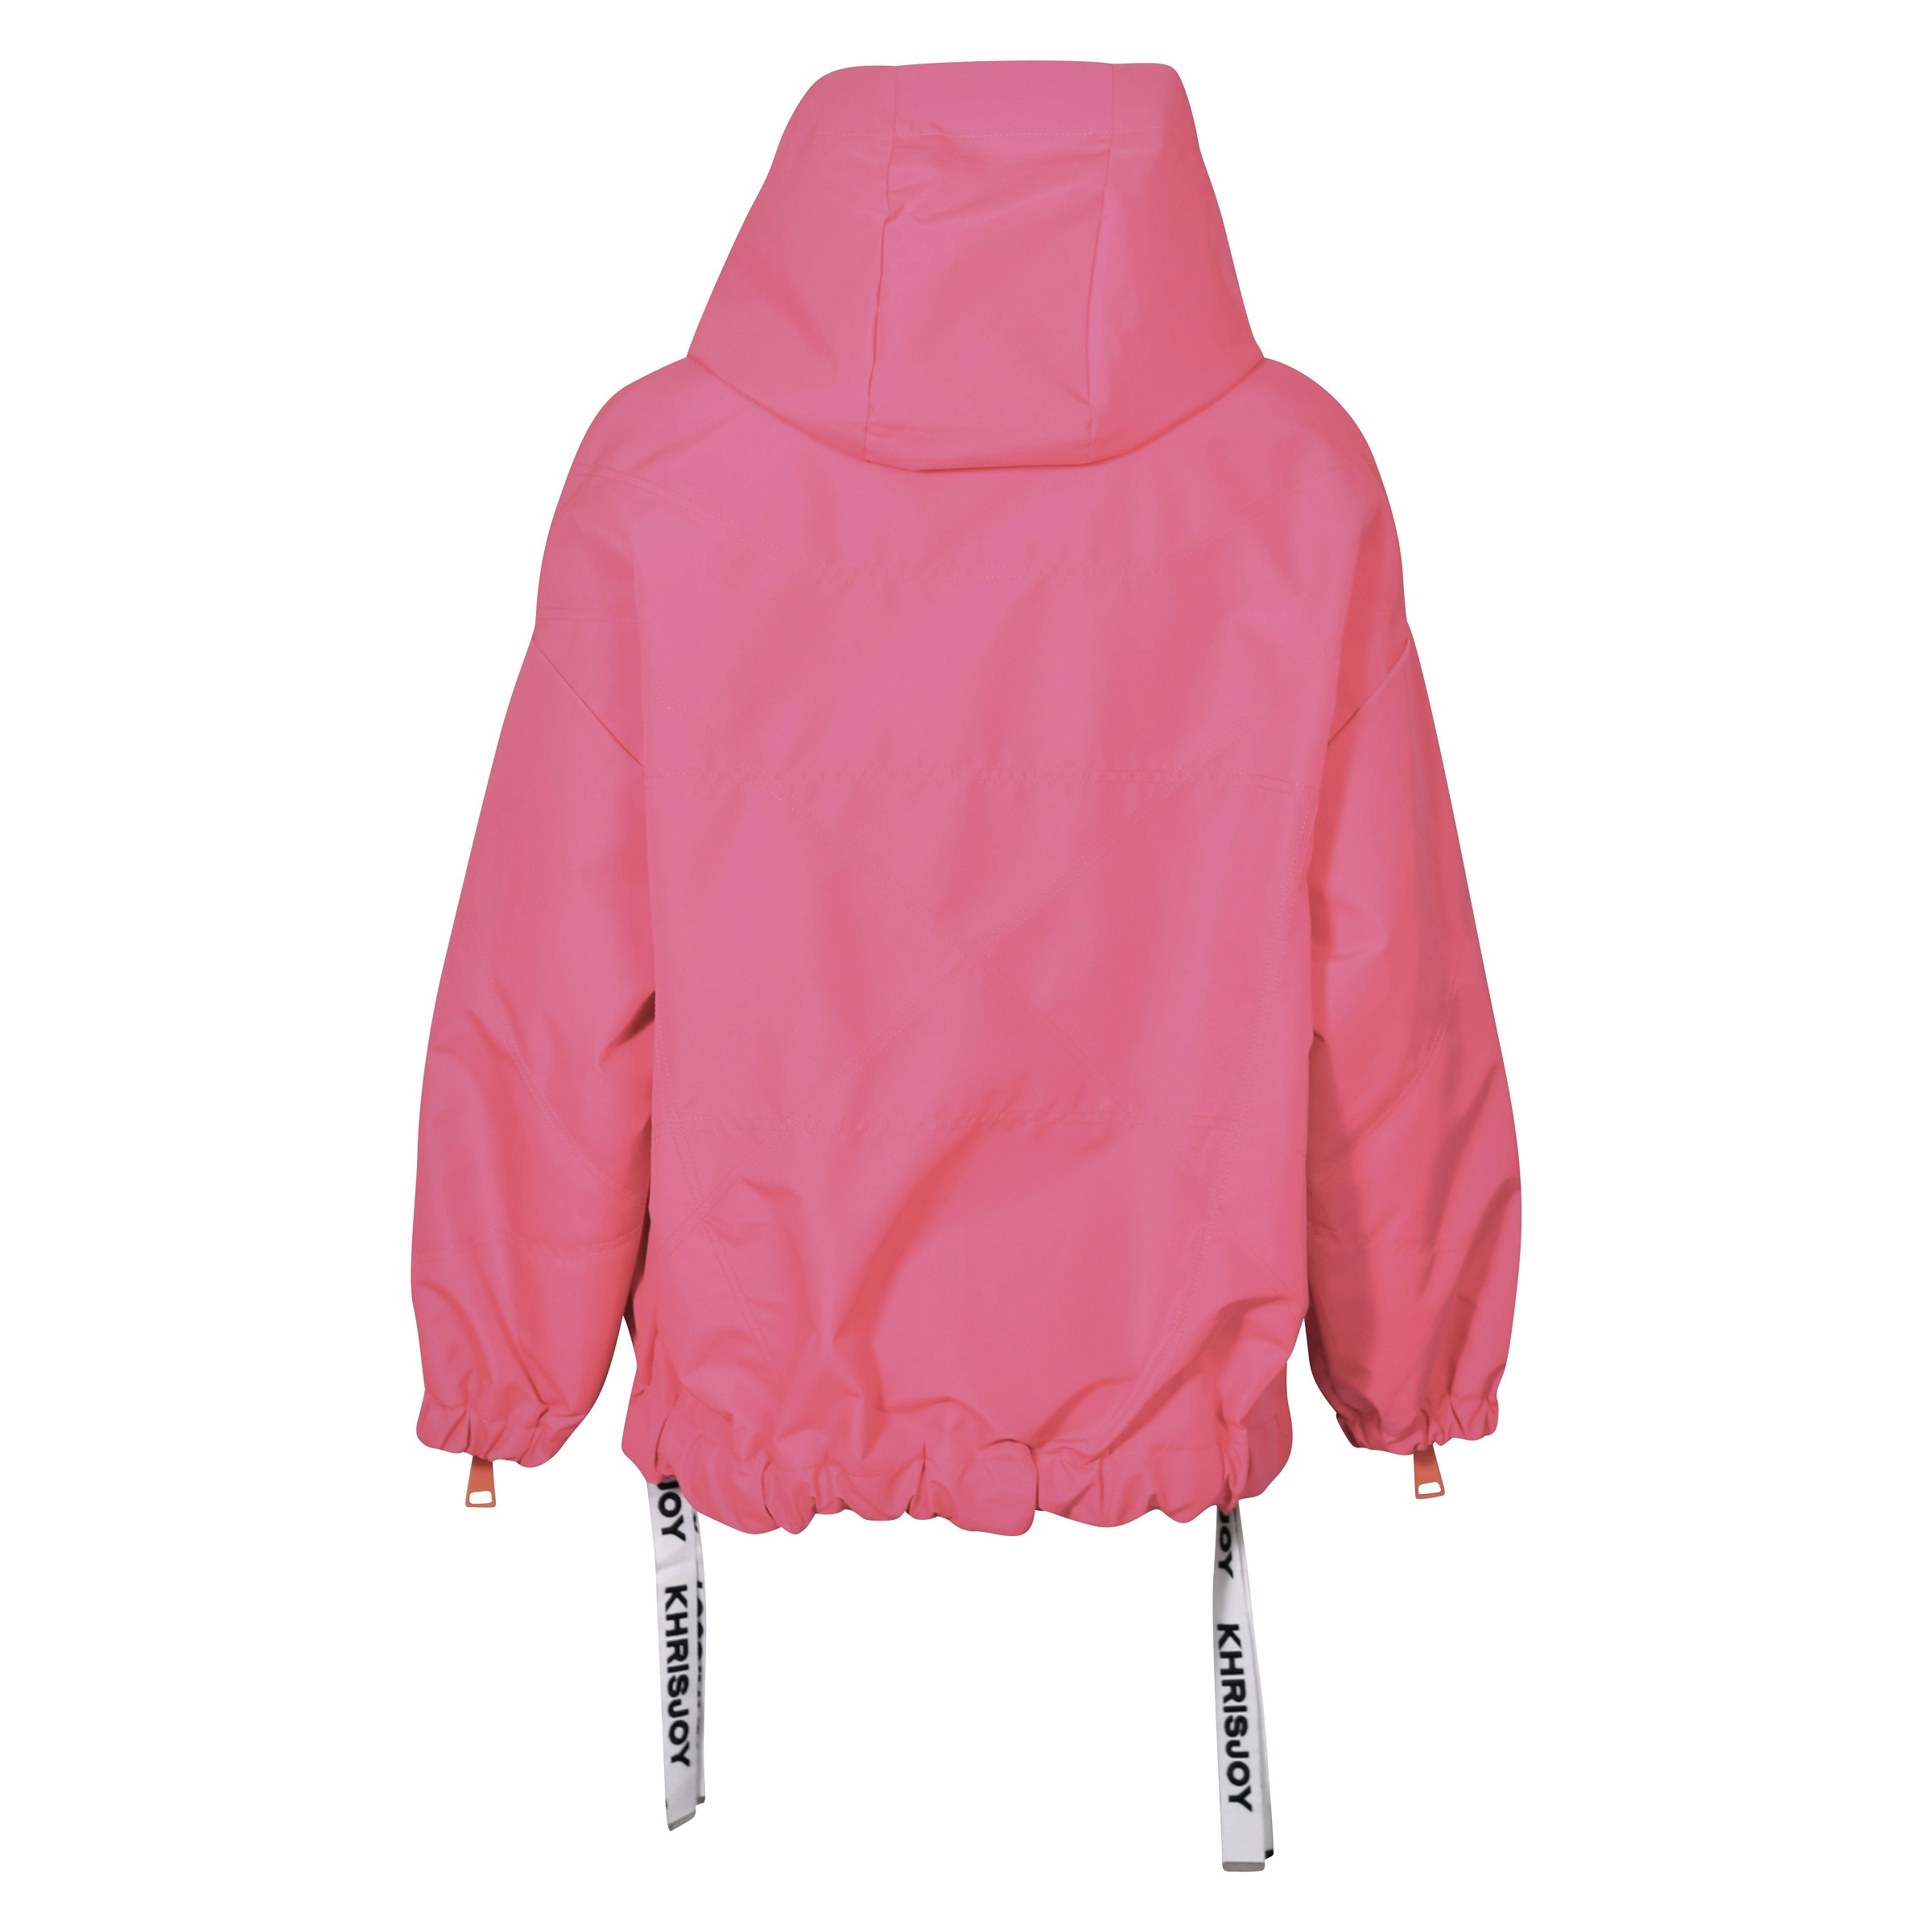 KHRISJOY Oversized Windbreaker Jacket in Flamingo Pink